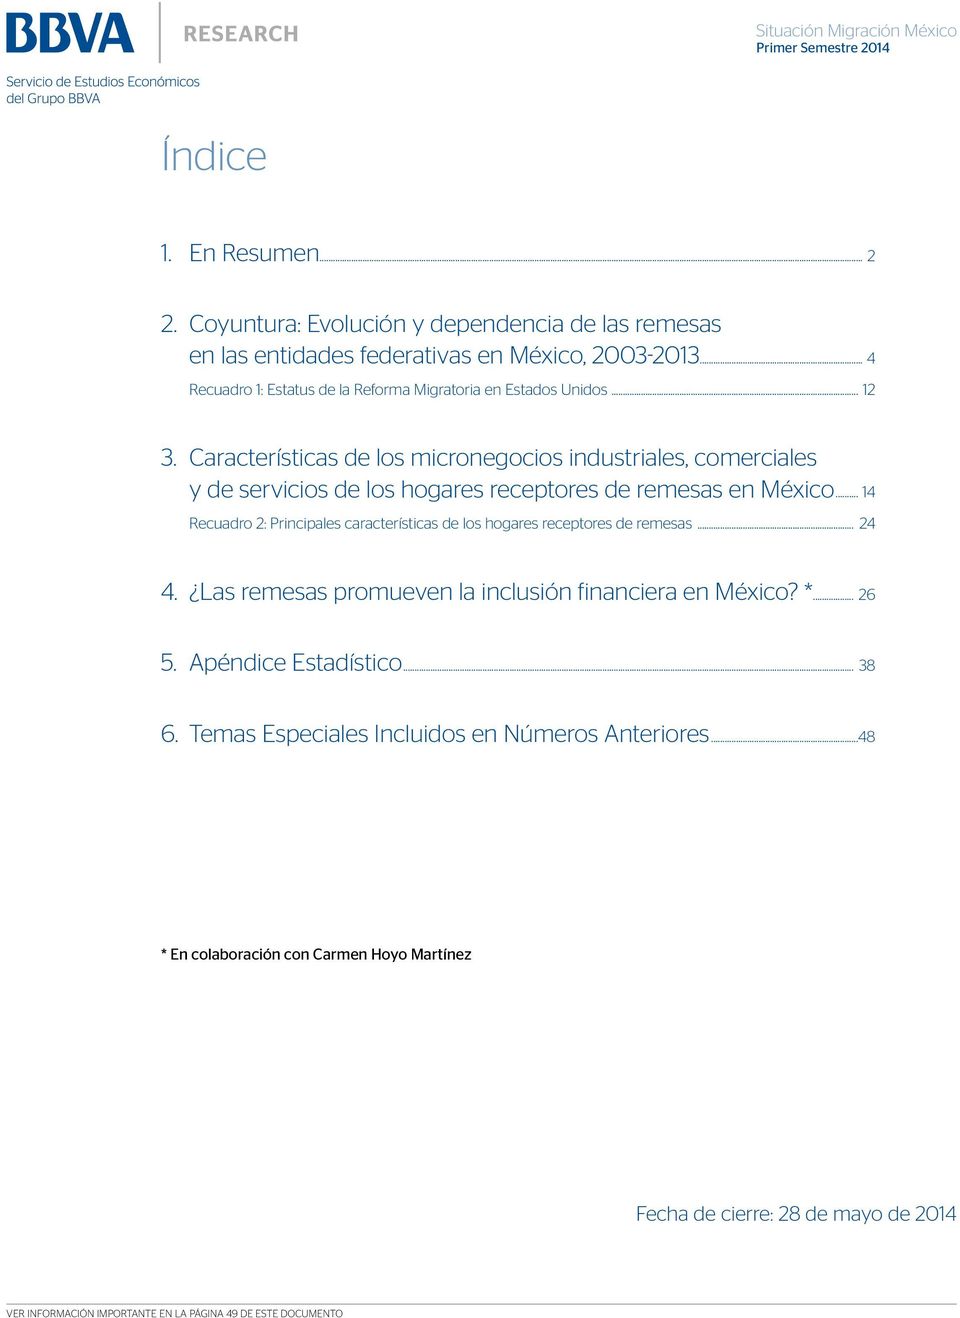 Características de los micronegocios industriales, comerciales y de servicios de los hogares receptores de remesas en México.